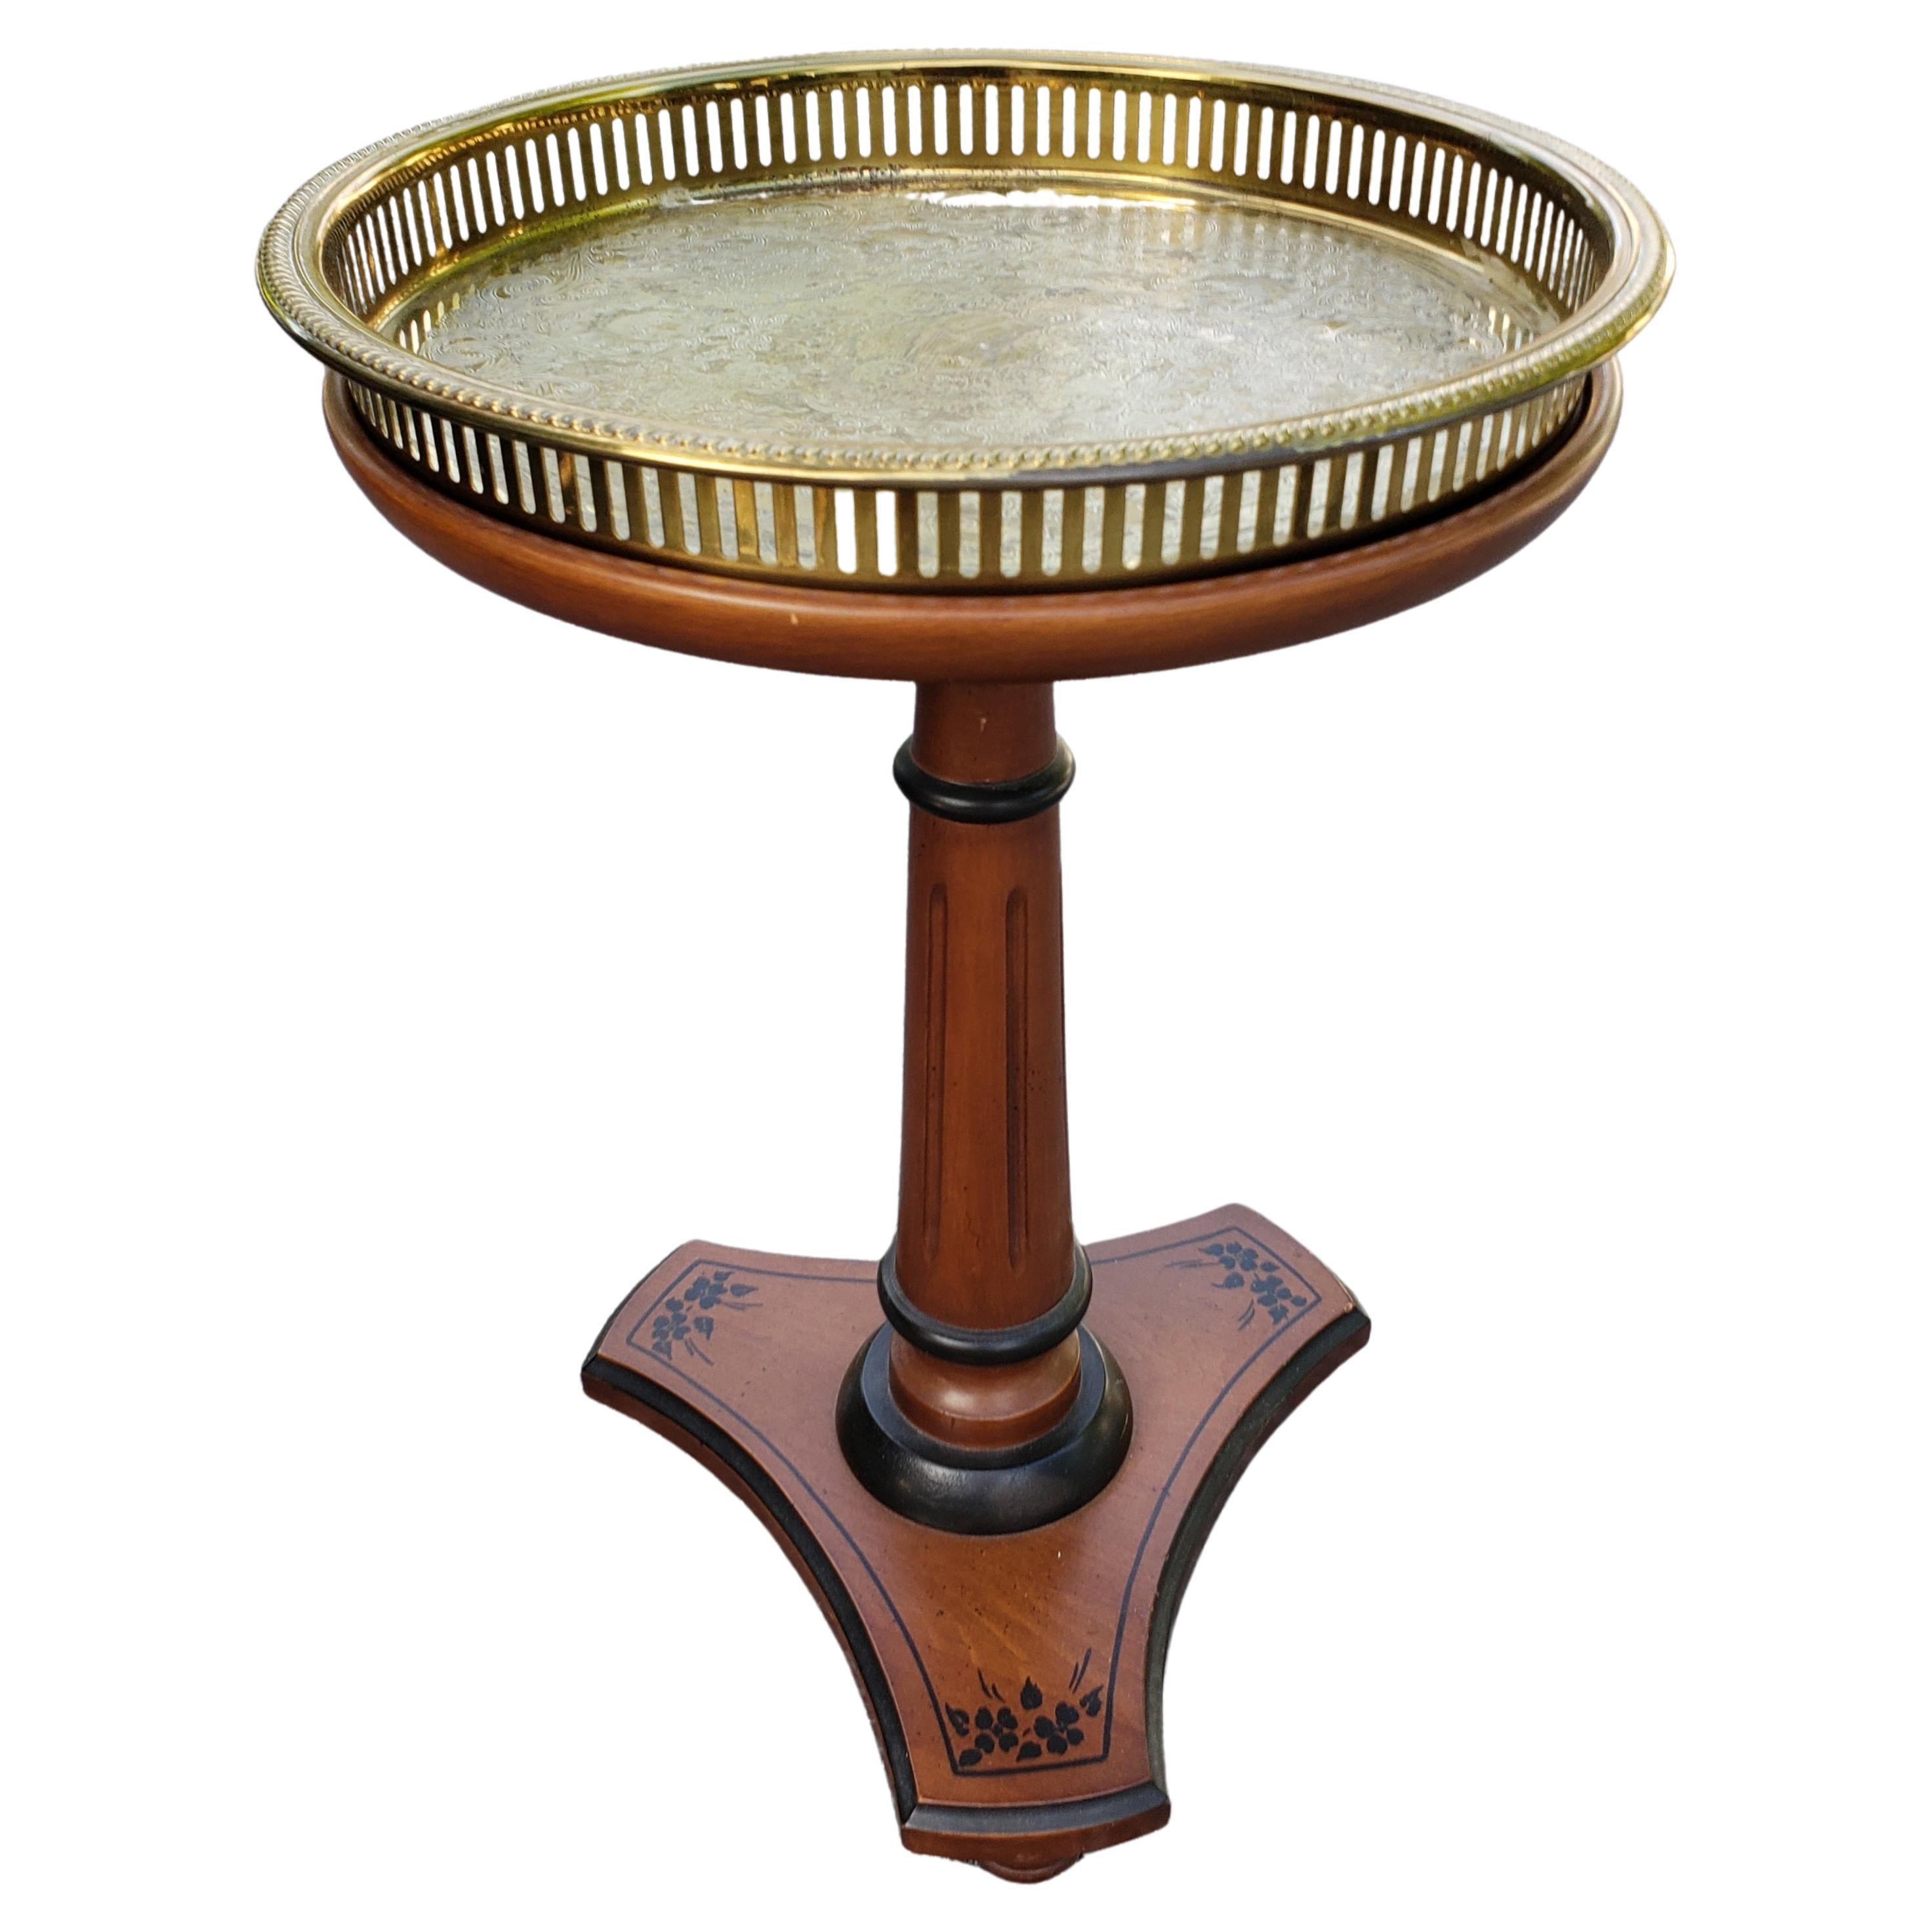 Ende des 20. Jh. Pedestal-Kerzenständer aus Nussbaumholz mit geätztem Messing-Tablett-Einsatz